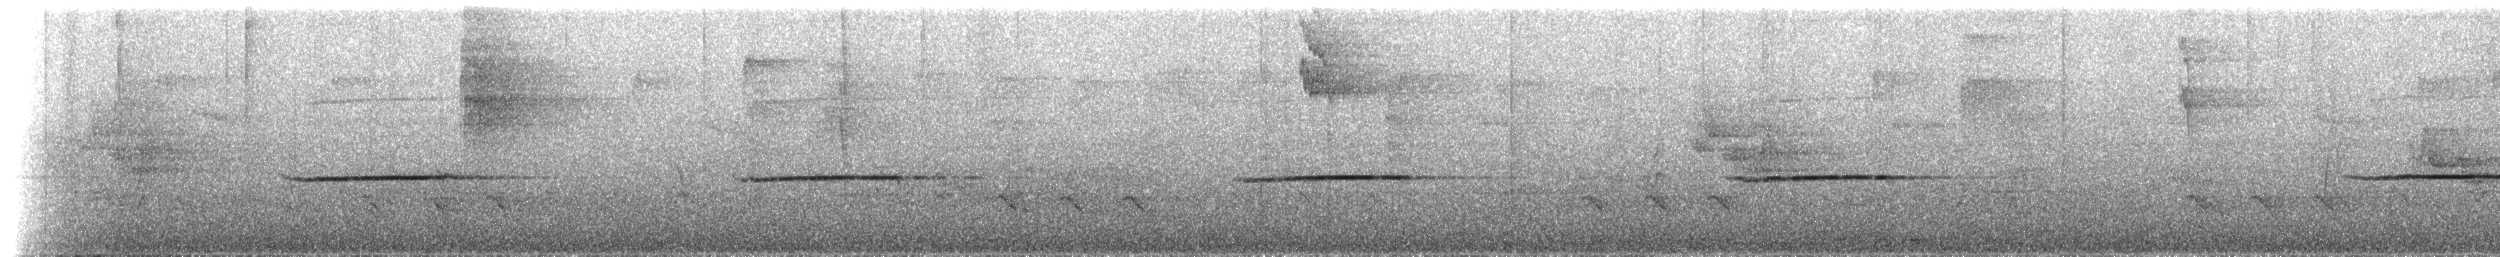 Viréon à calotte rousse (groupe ochraceiceps) - ML527264